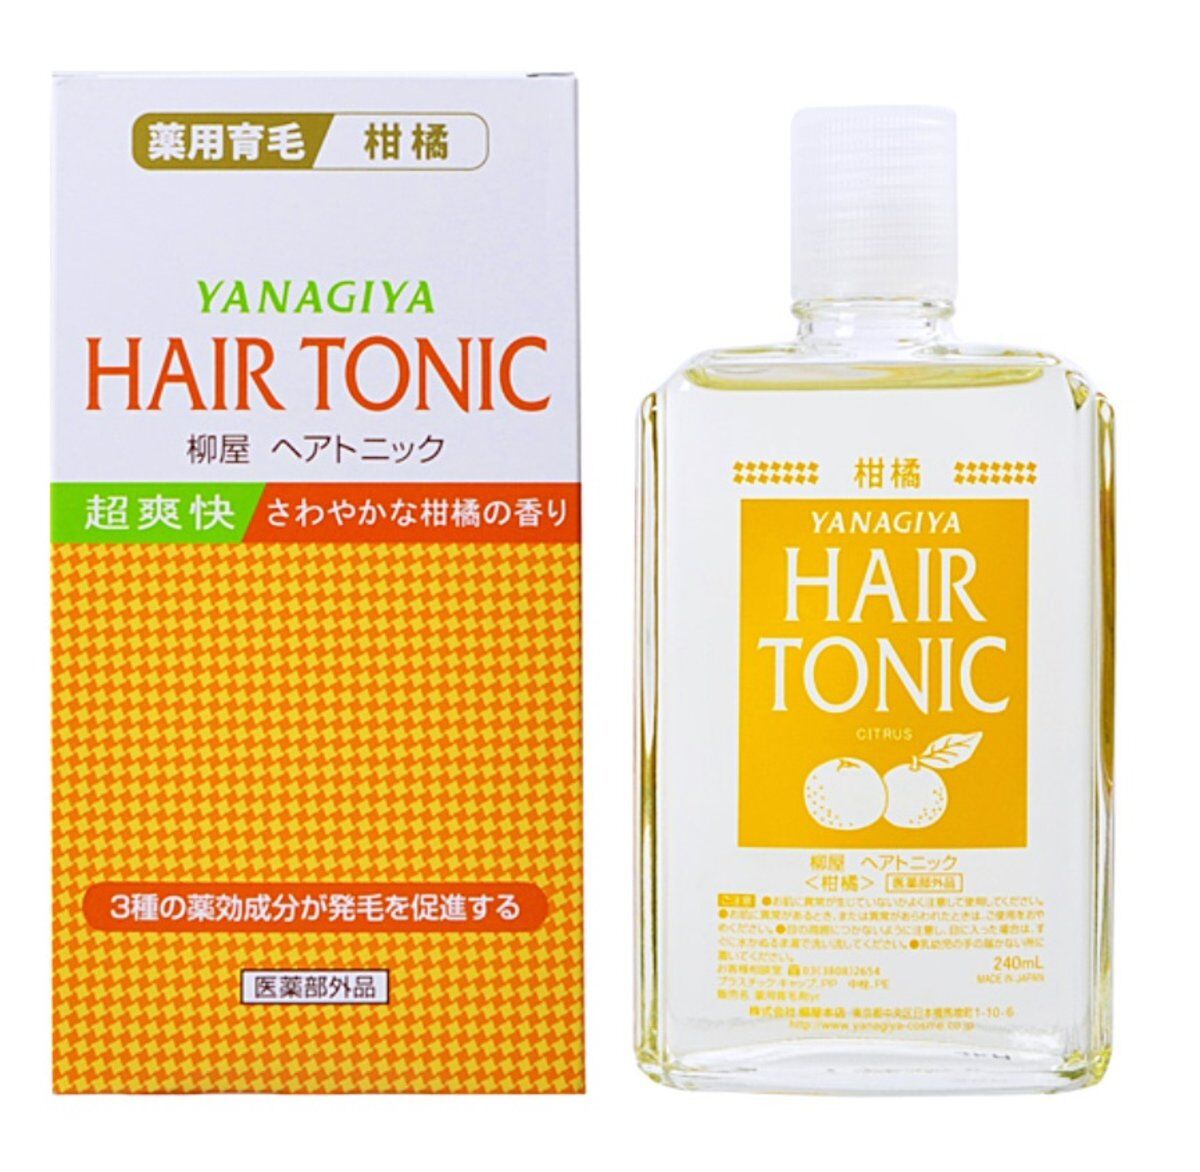 YANAGIYA Hair Tonic Citrus 240mL